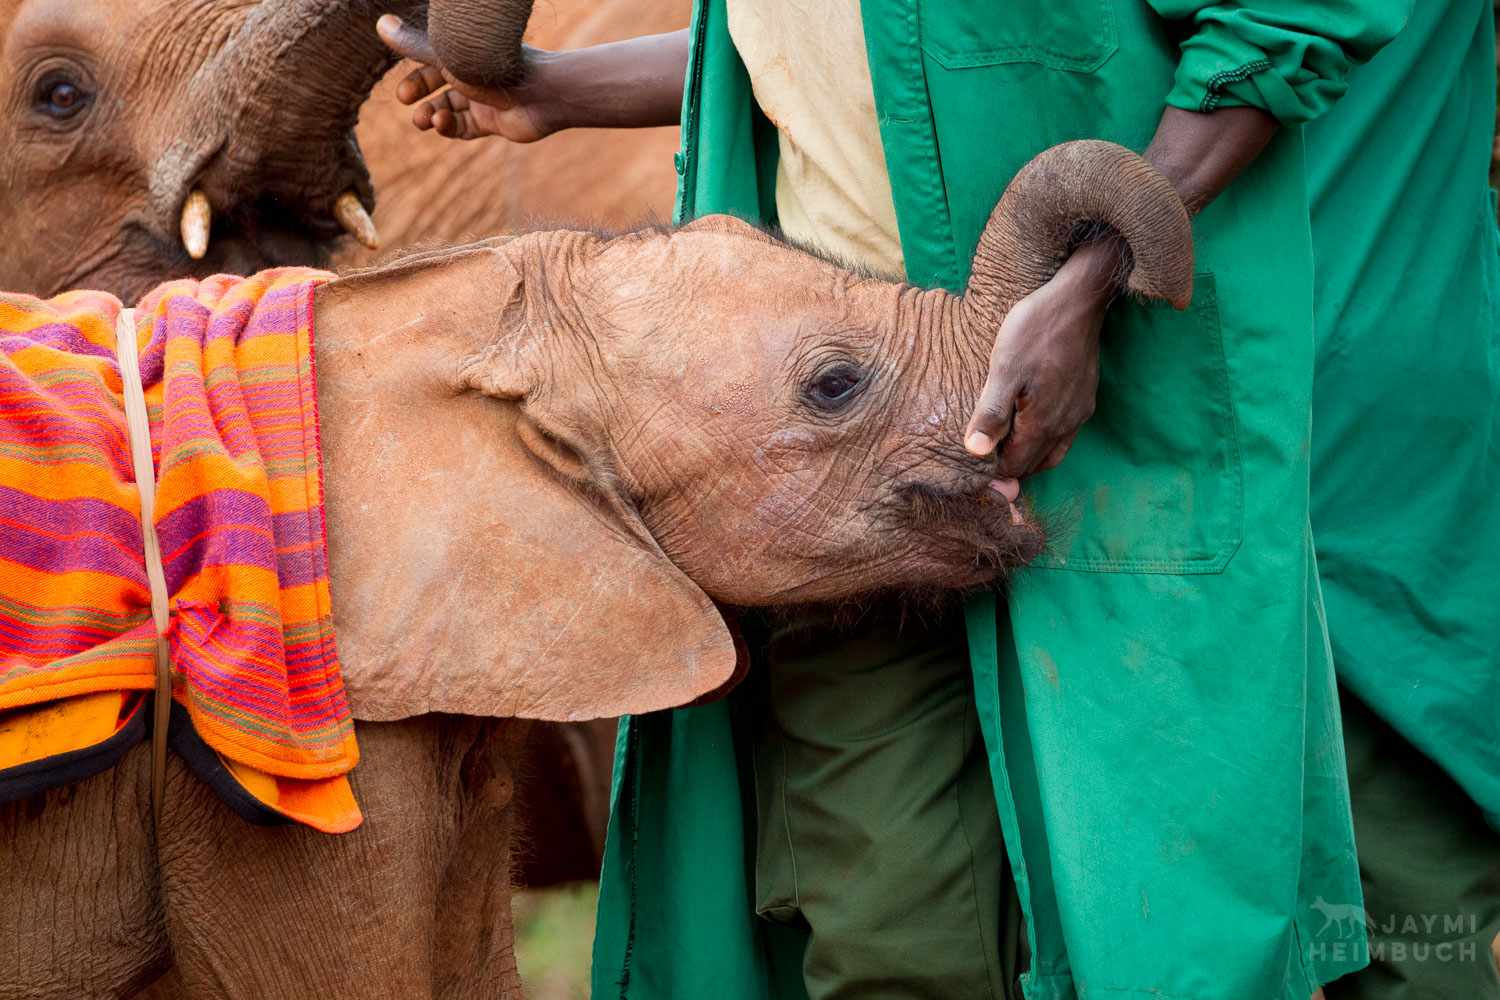 Los elefantes se quedan huérfanos por diversas razones, pero sea cual sea el motivo, reciben una segunda oportunidad gracias al trabajo de la Fundación David Sheldrick para la Vida Silvestre.